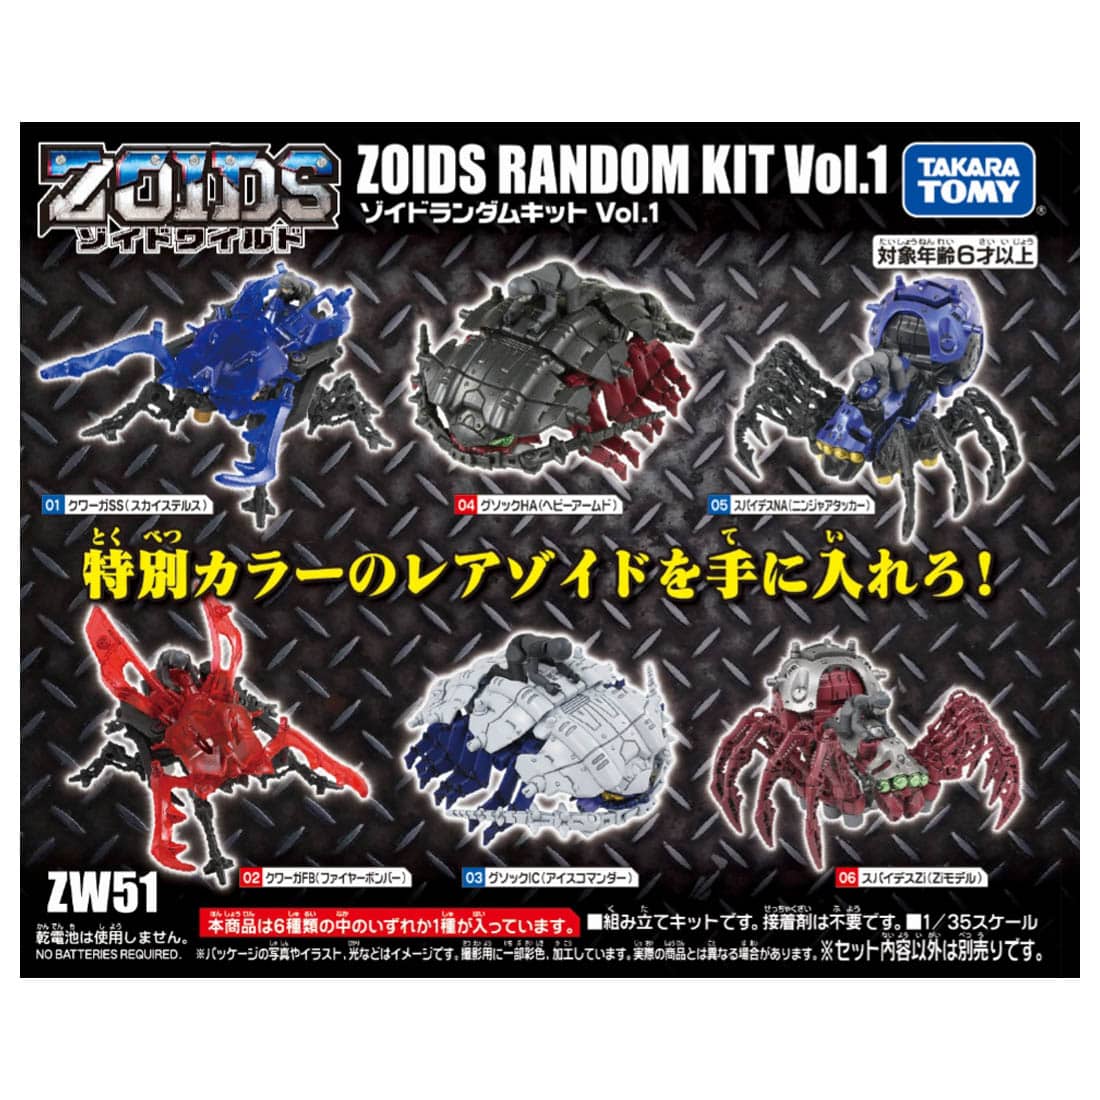 【ゾイドワイルド】ZOIDS『ZW51 ゾイドランダムキットVol.1』組み立て可動フィギュア【タカラトミー】より2021年1月発売予定♪